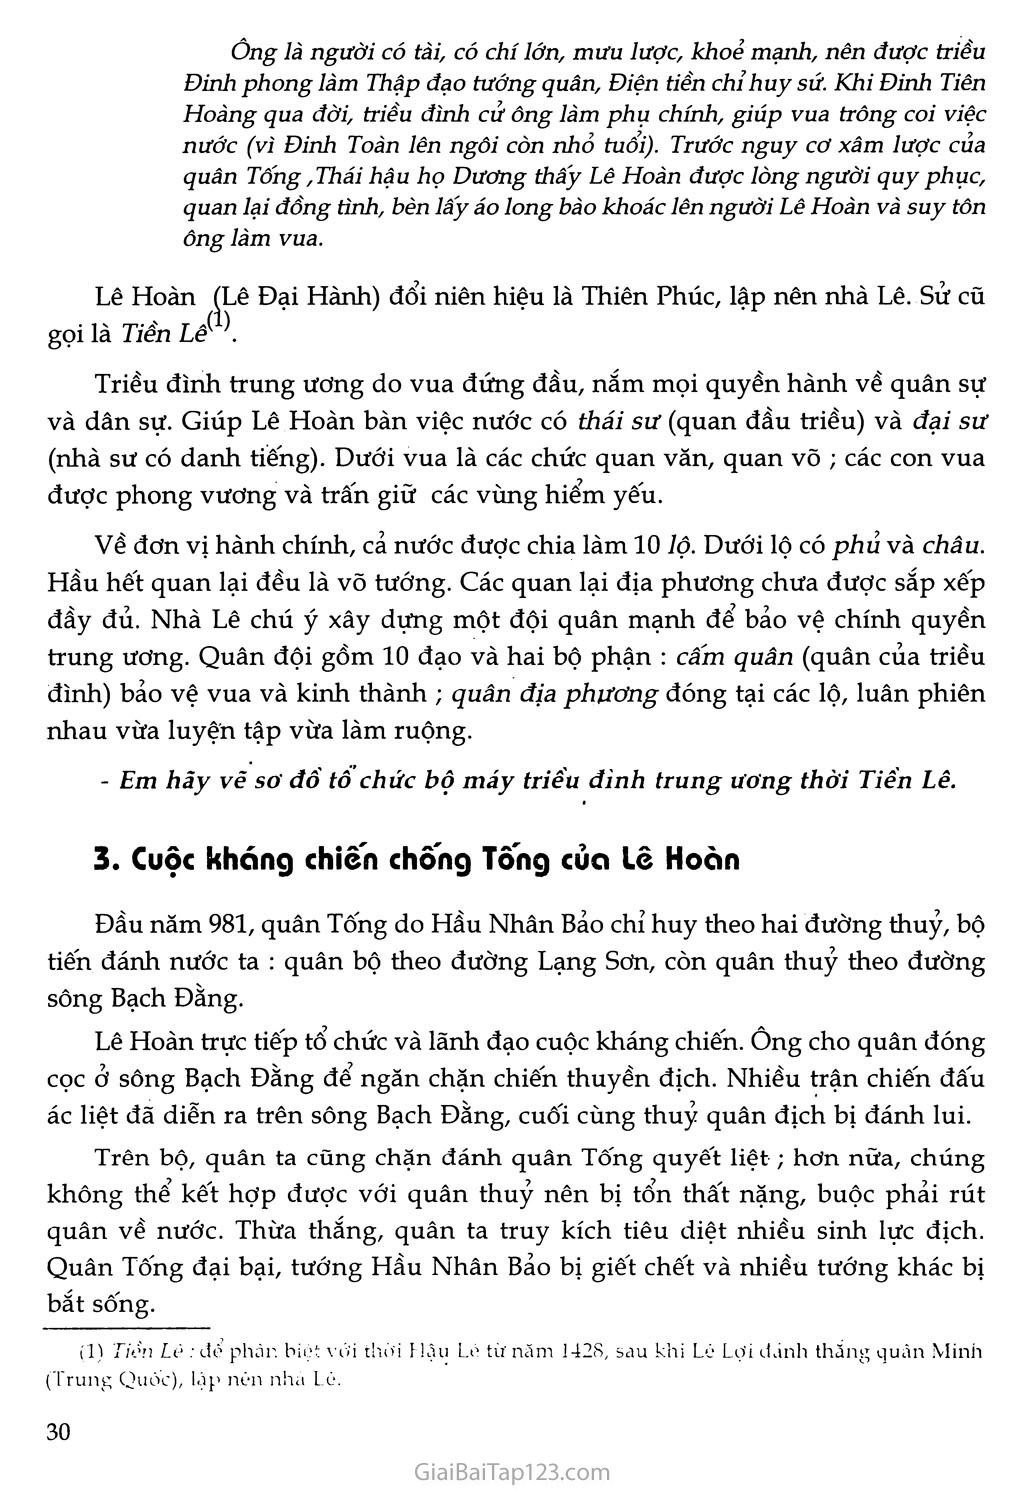 Bài 9 - Nước Đại cồ Việt thời Đinh - Tiền Lê trang 3